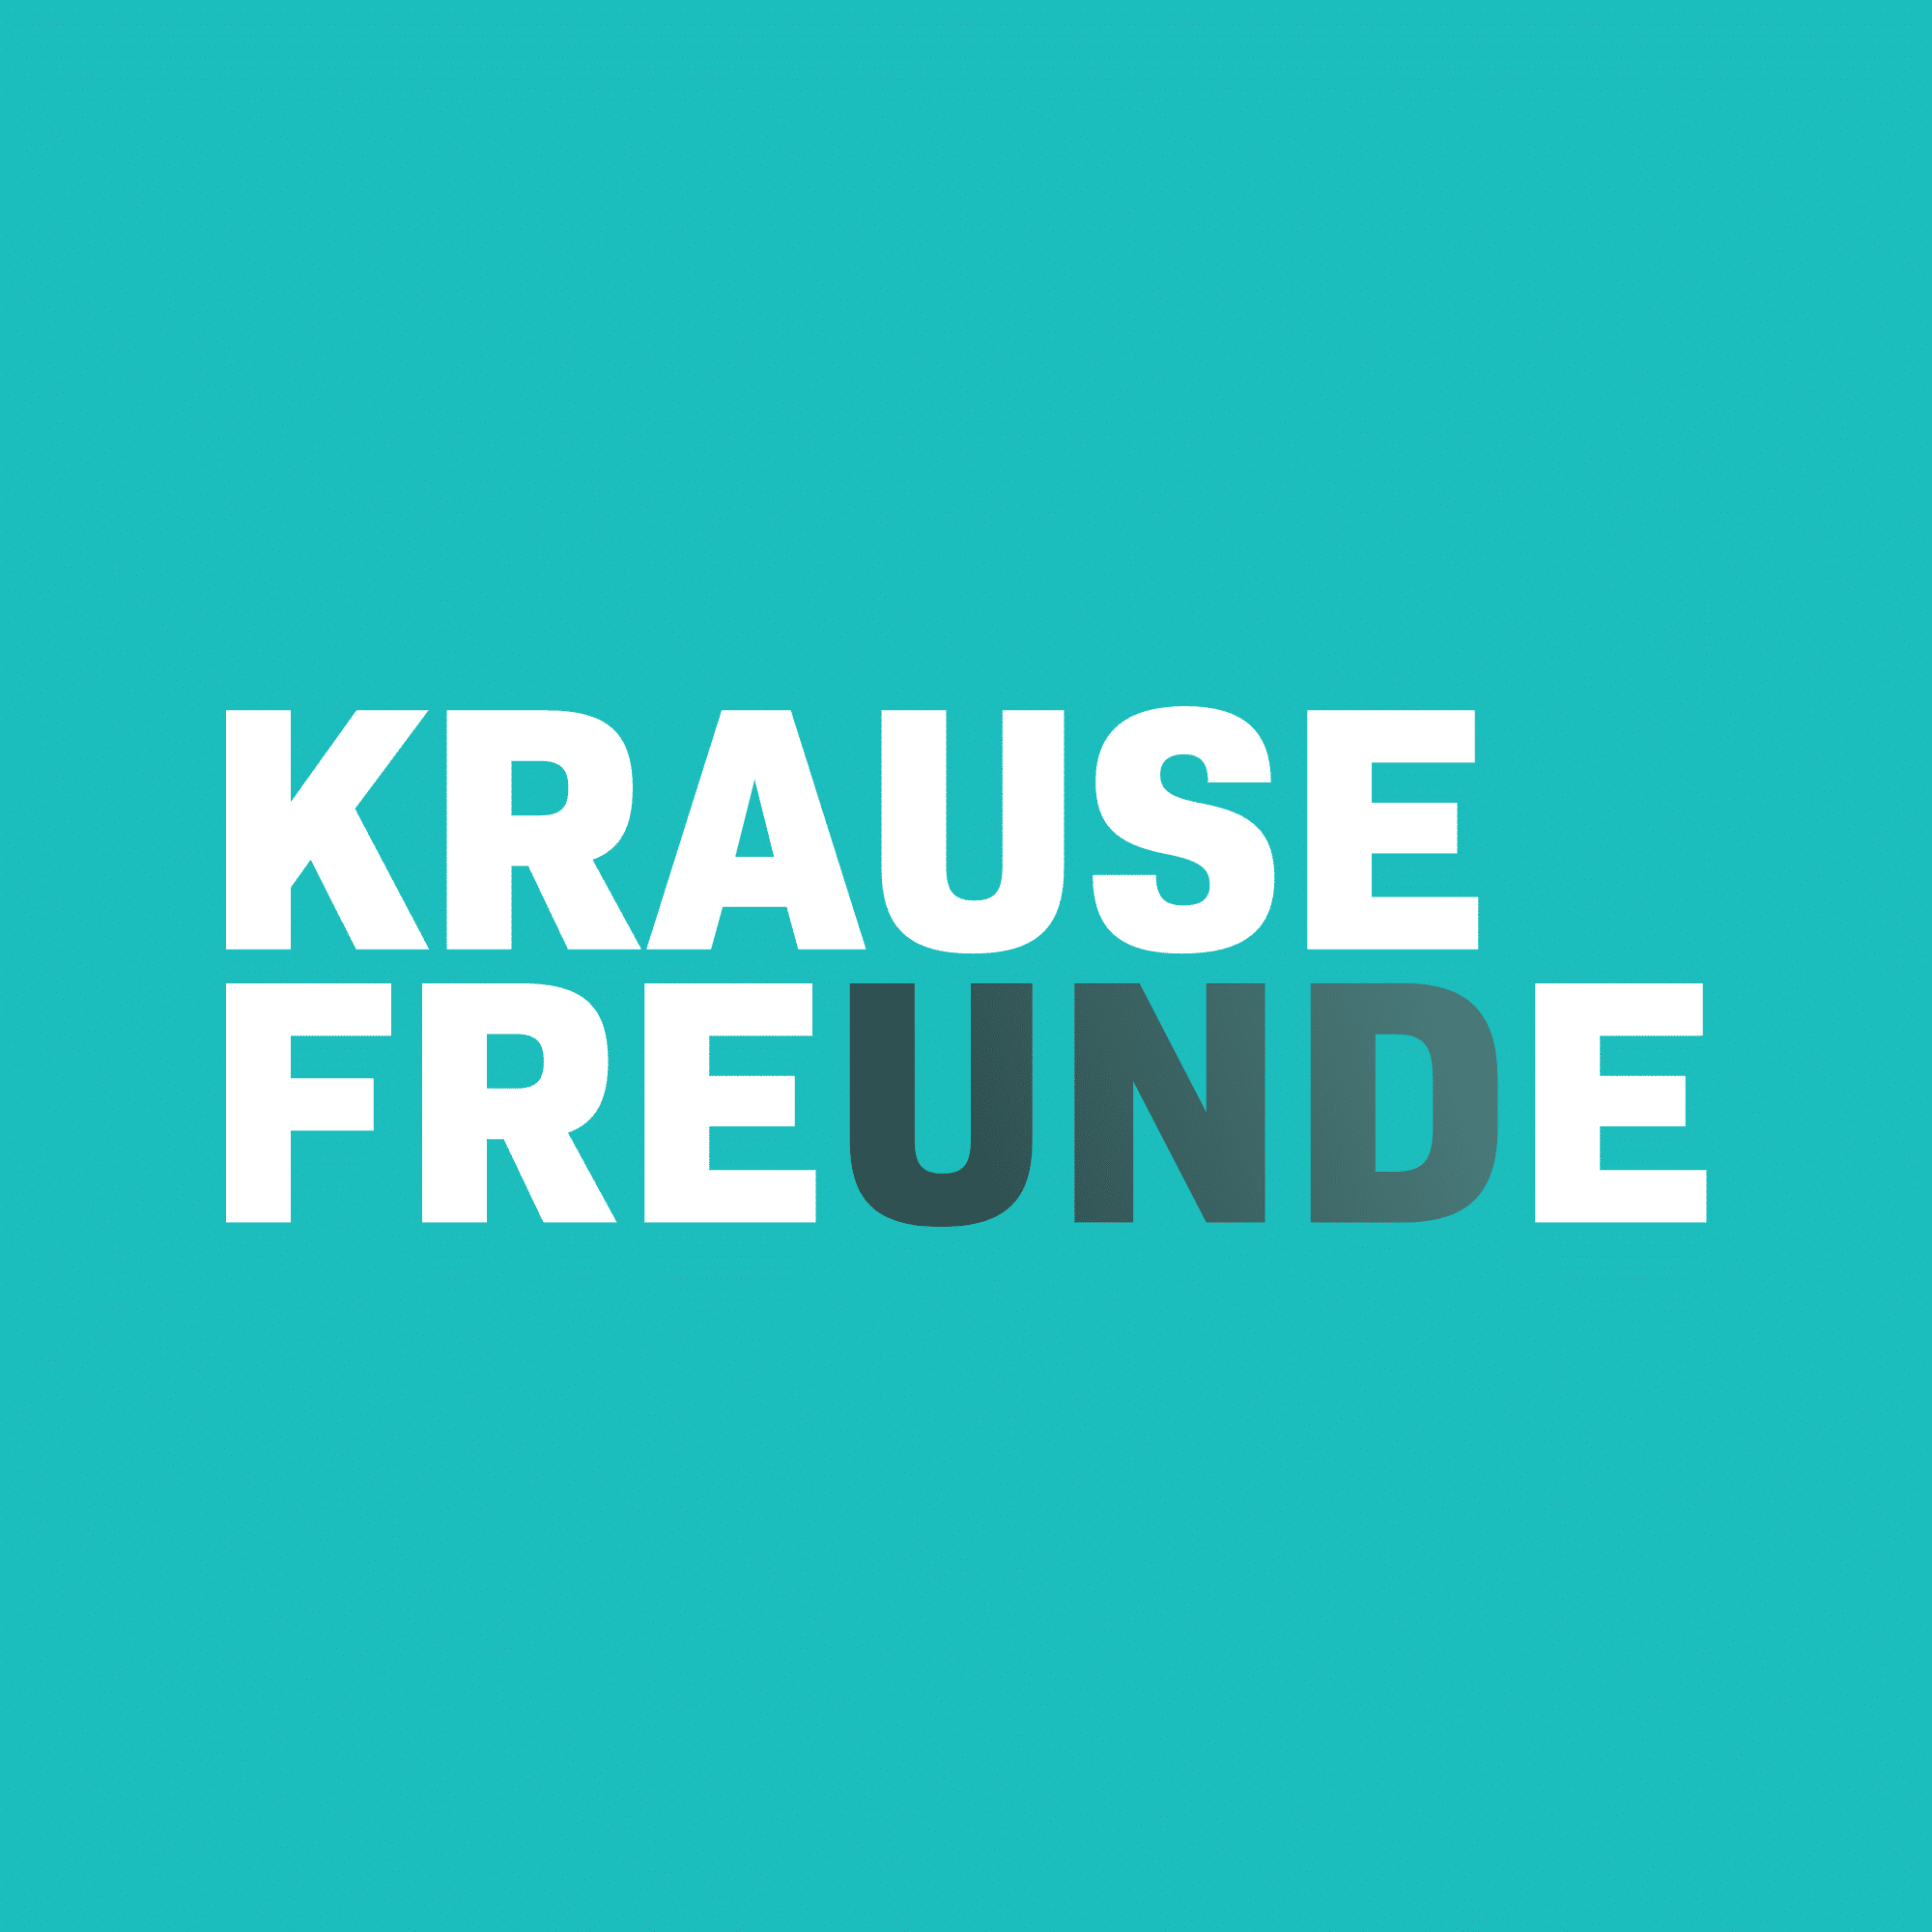 (c) Krause-freunde.de